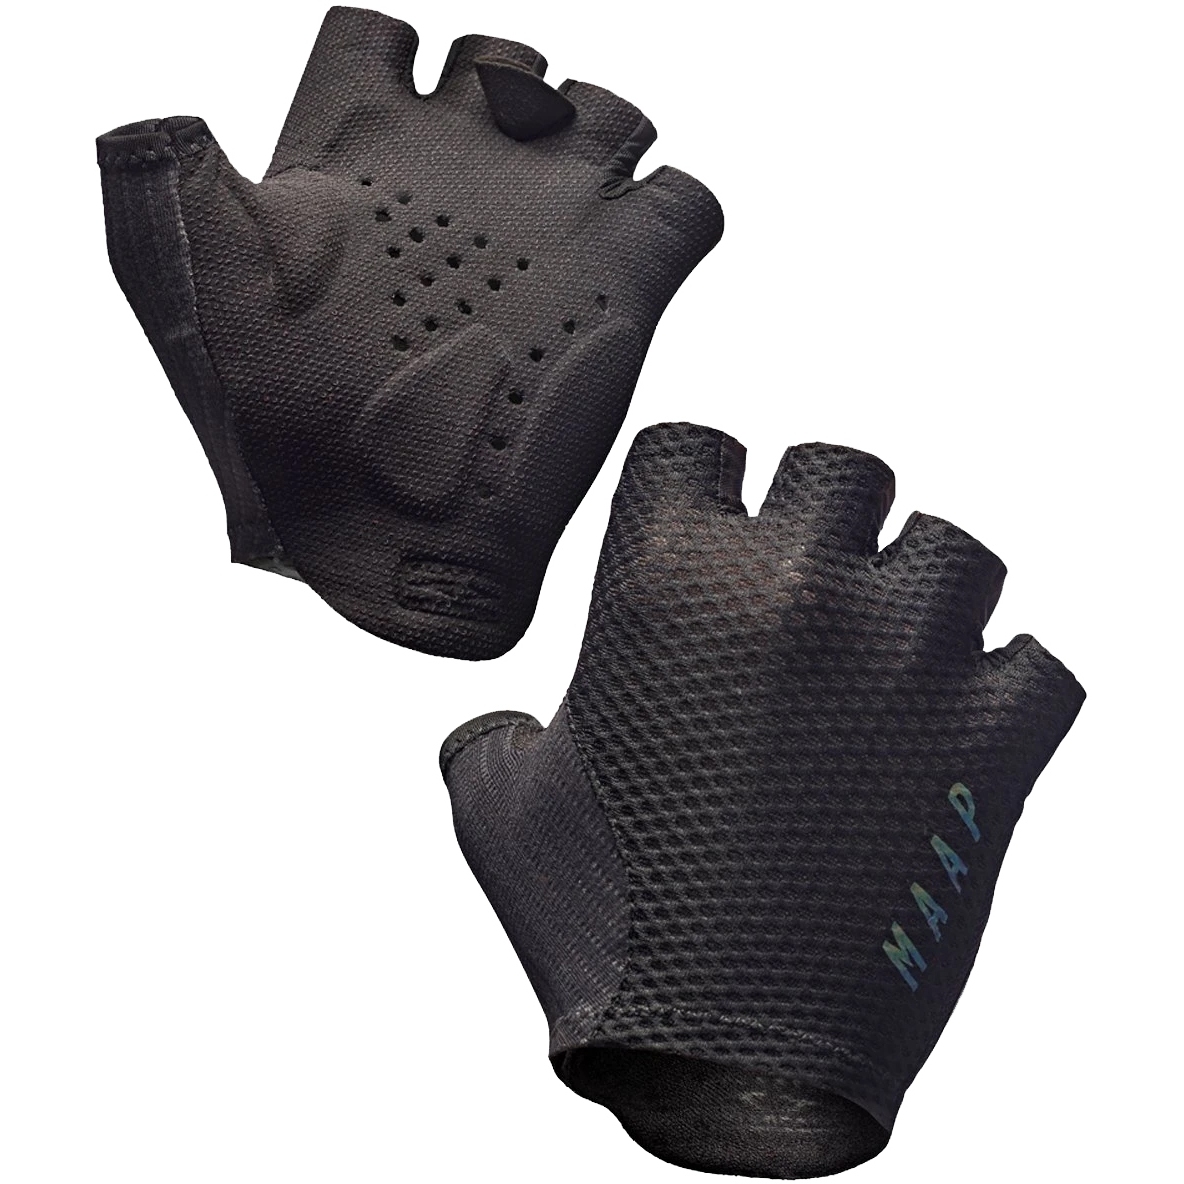 Productfoto van MAAP Echo Pro Base Race Handschoenen met Korte Vingers - zwart